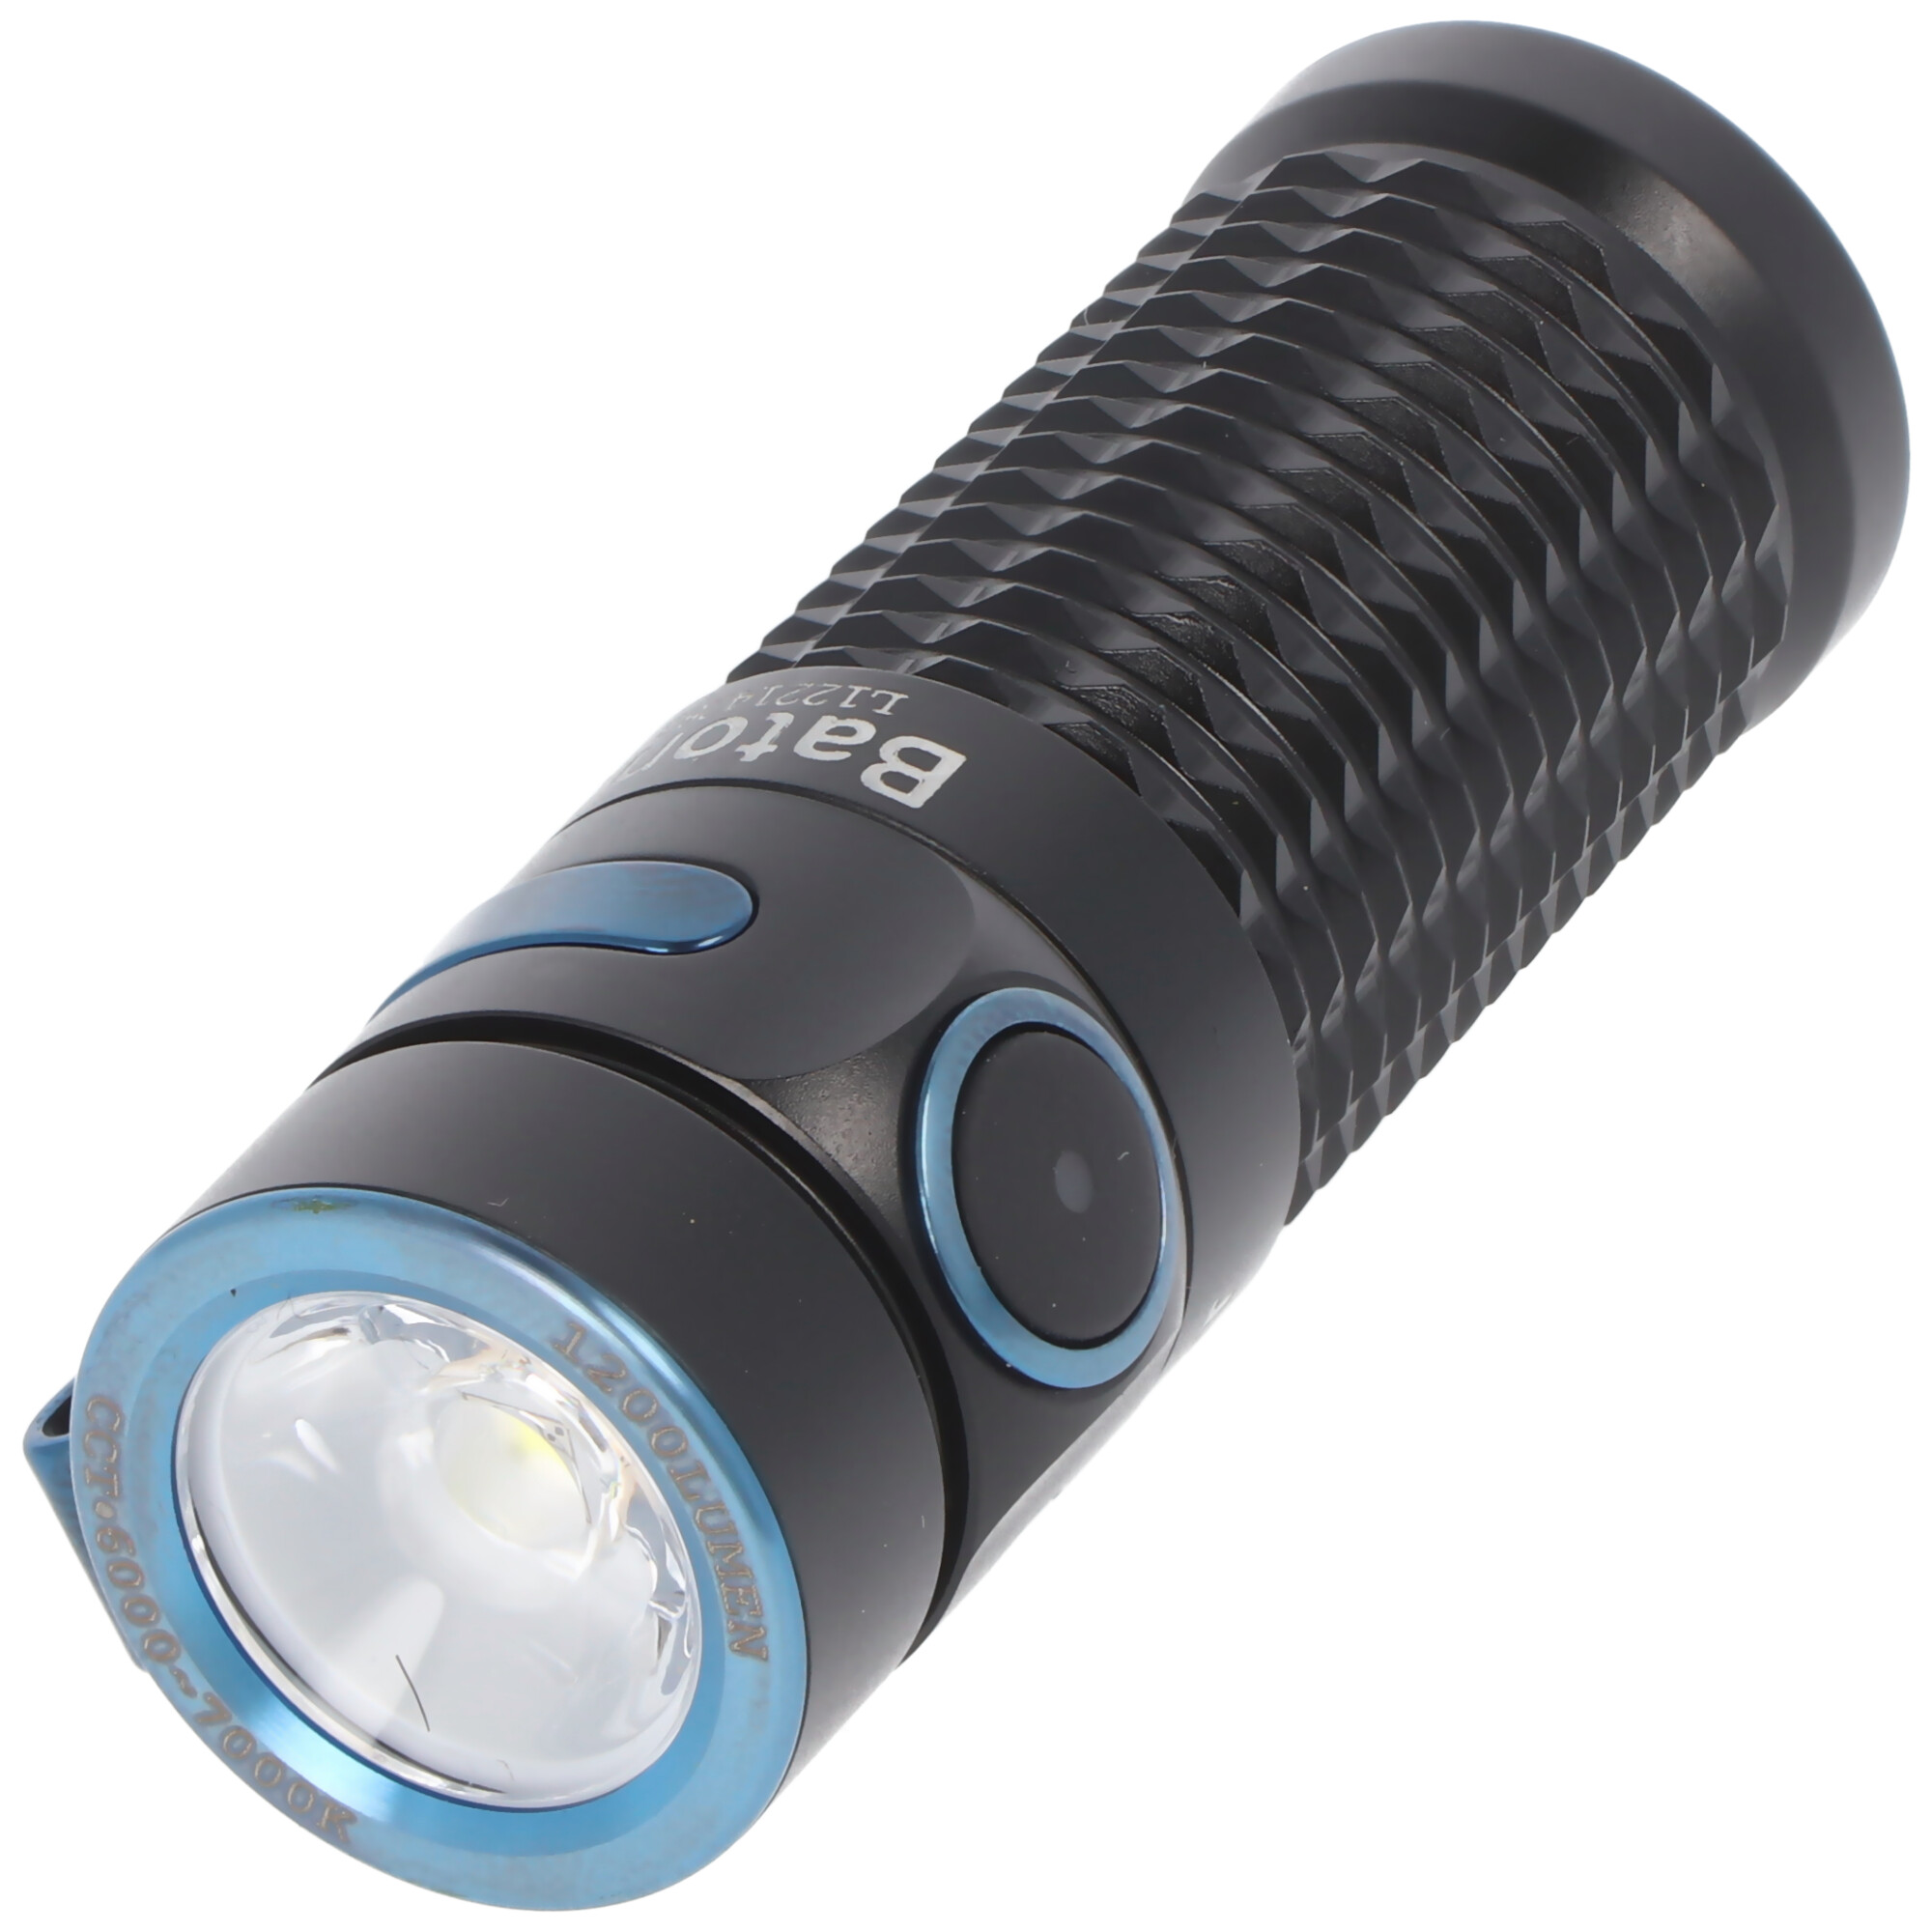 Olight Baton 3 LED-Taschenlampe 1200 Lumen, wiederaufladbar, rutschfestes Texturdesign, inklusive IMR16340 3,7V 550mAh Akku und Ladekabel, schwarz